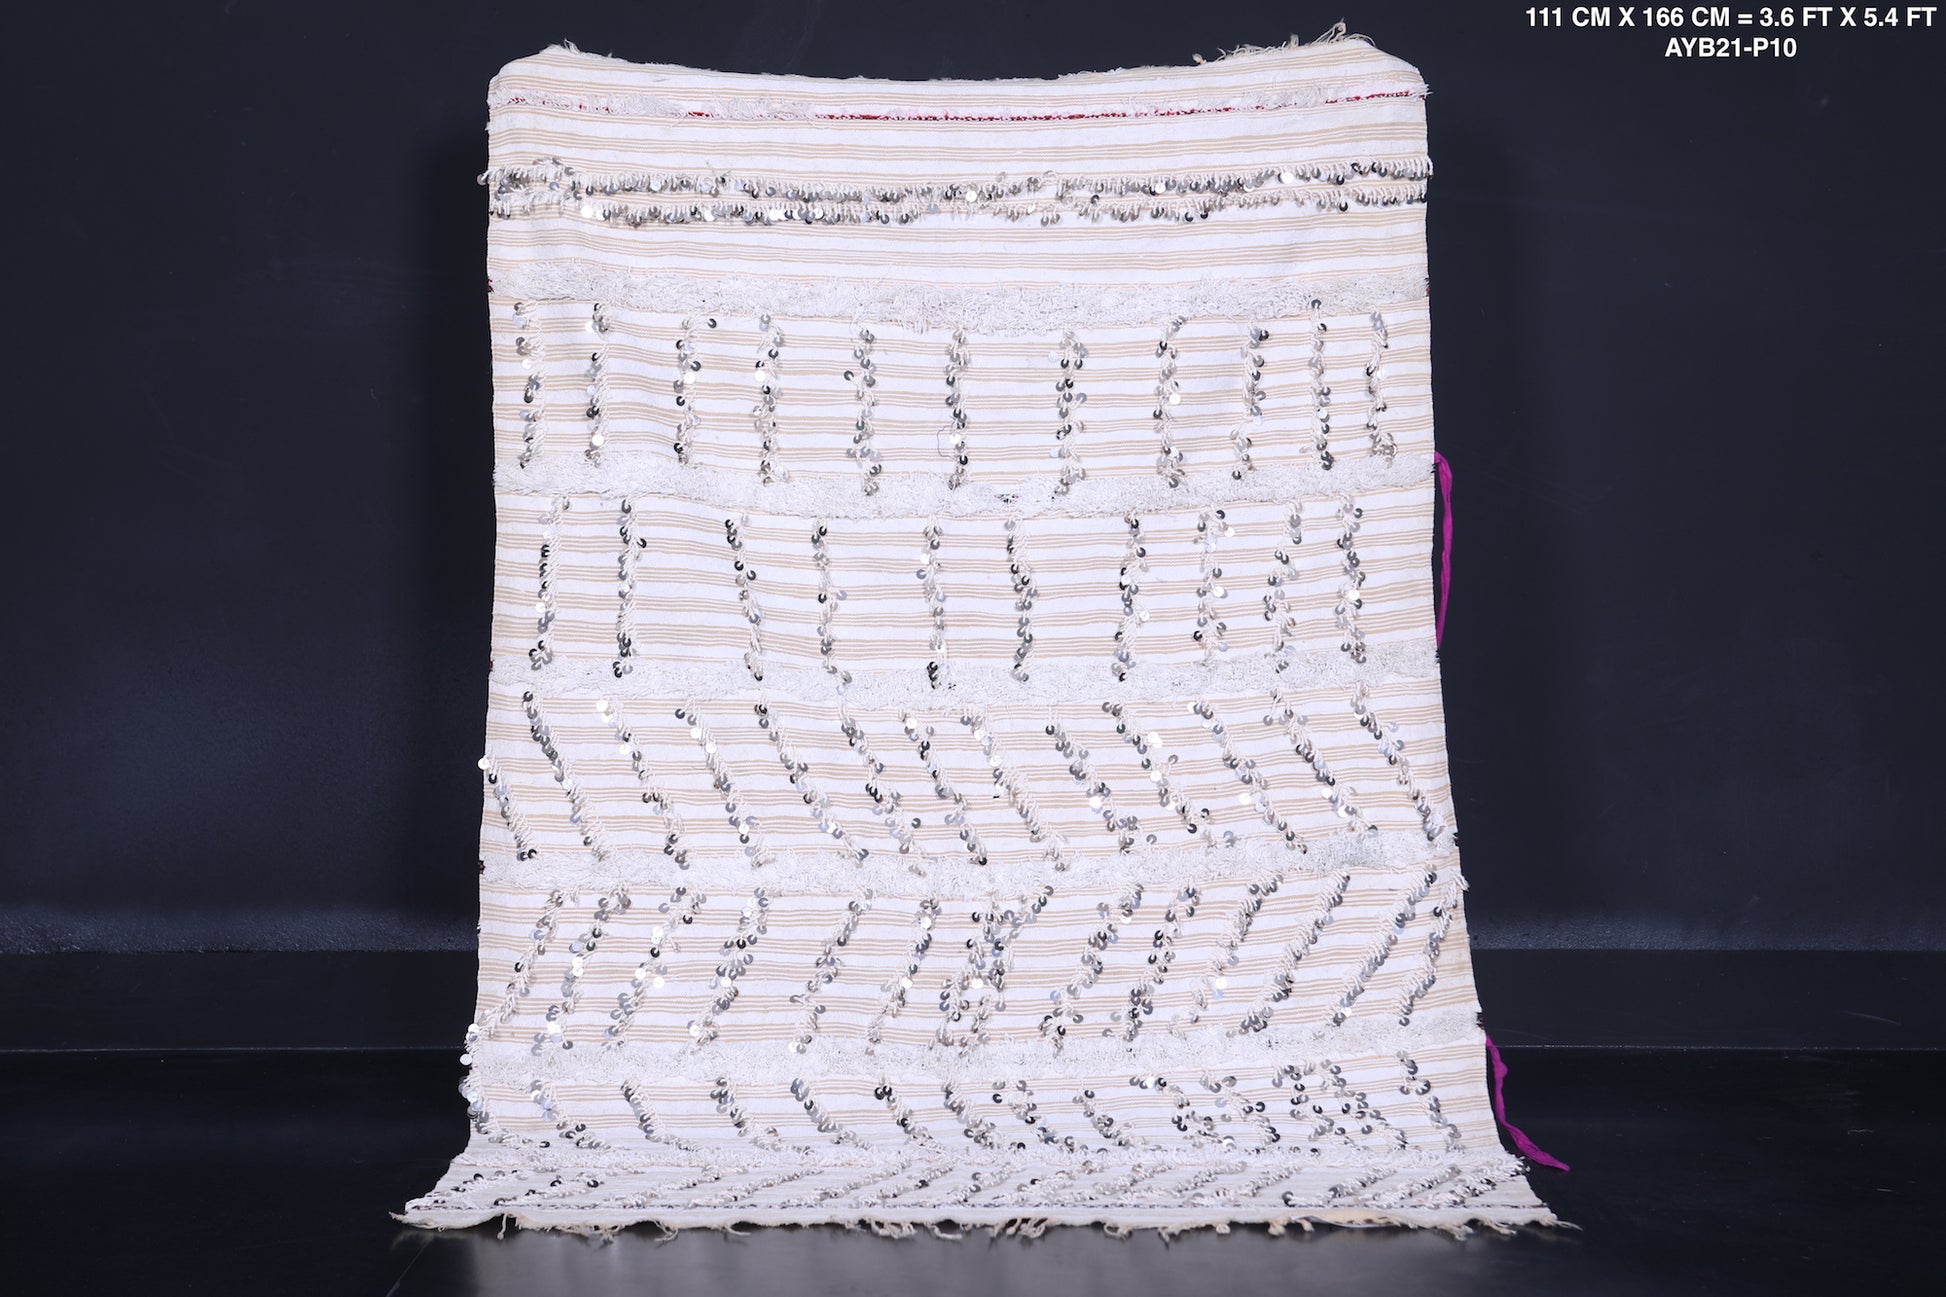 Berber wedding blanket 3.6 FT X 5.4 FT